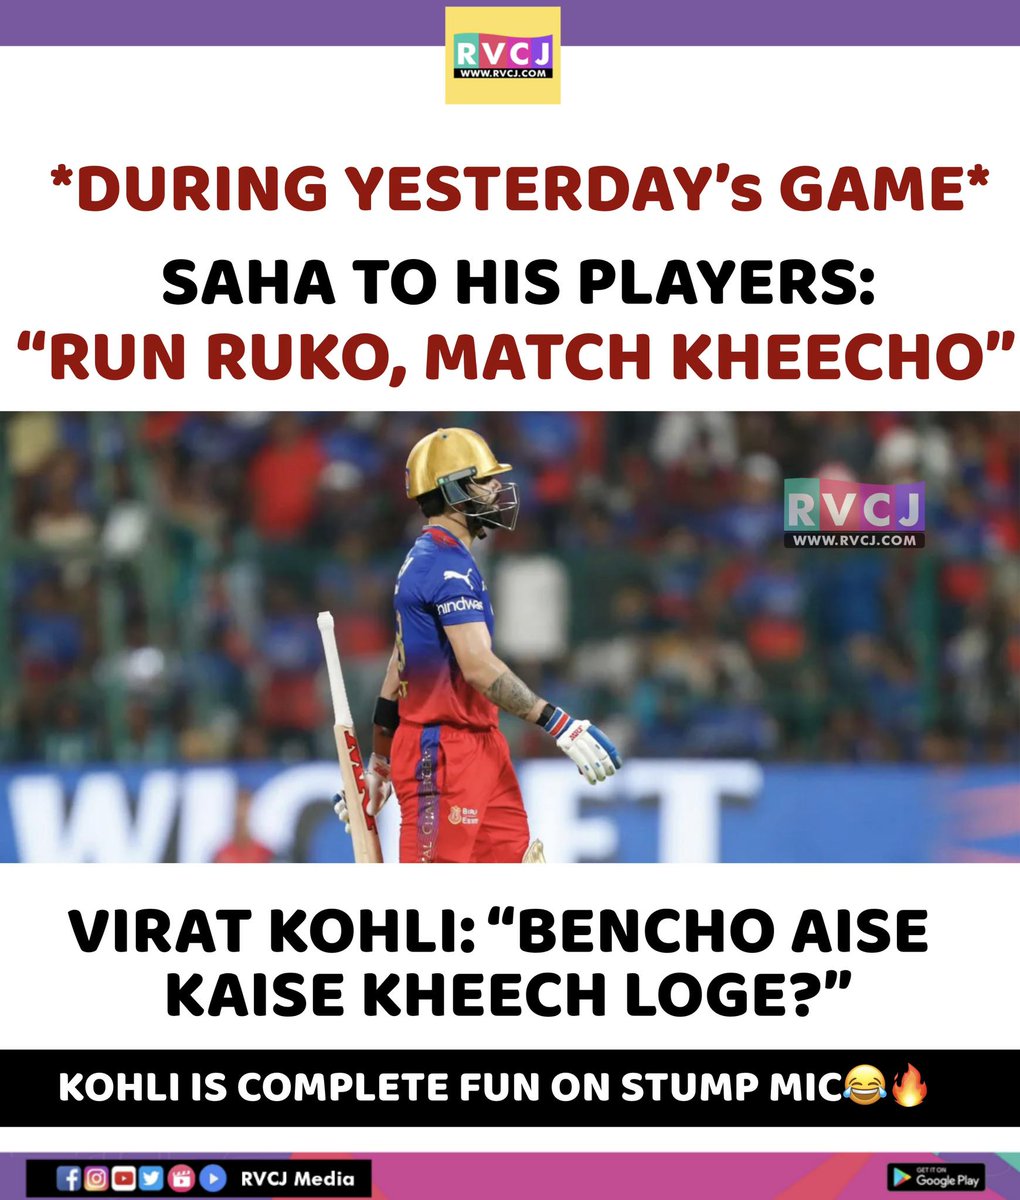 Virat Kohli got no chill 😂😂